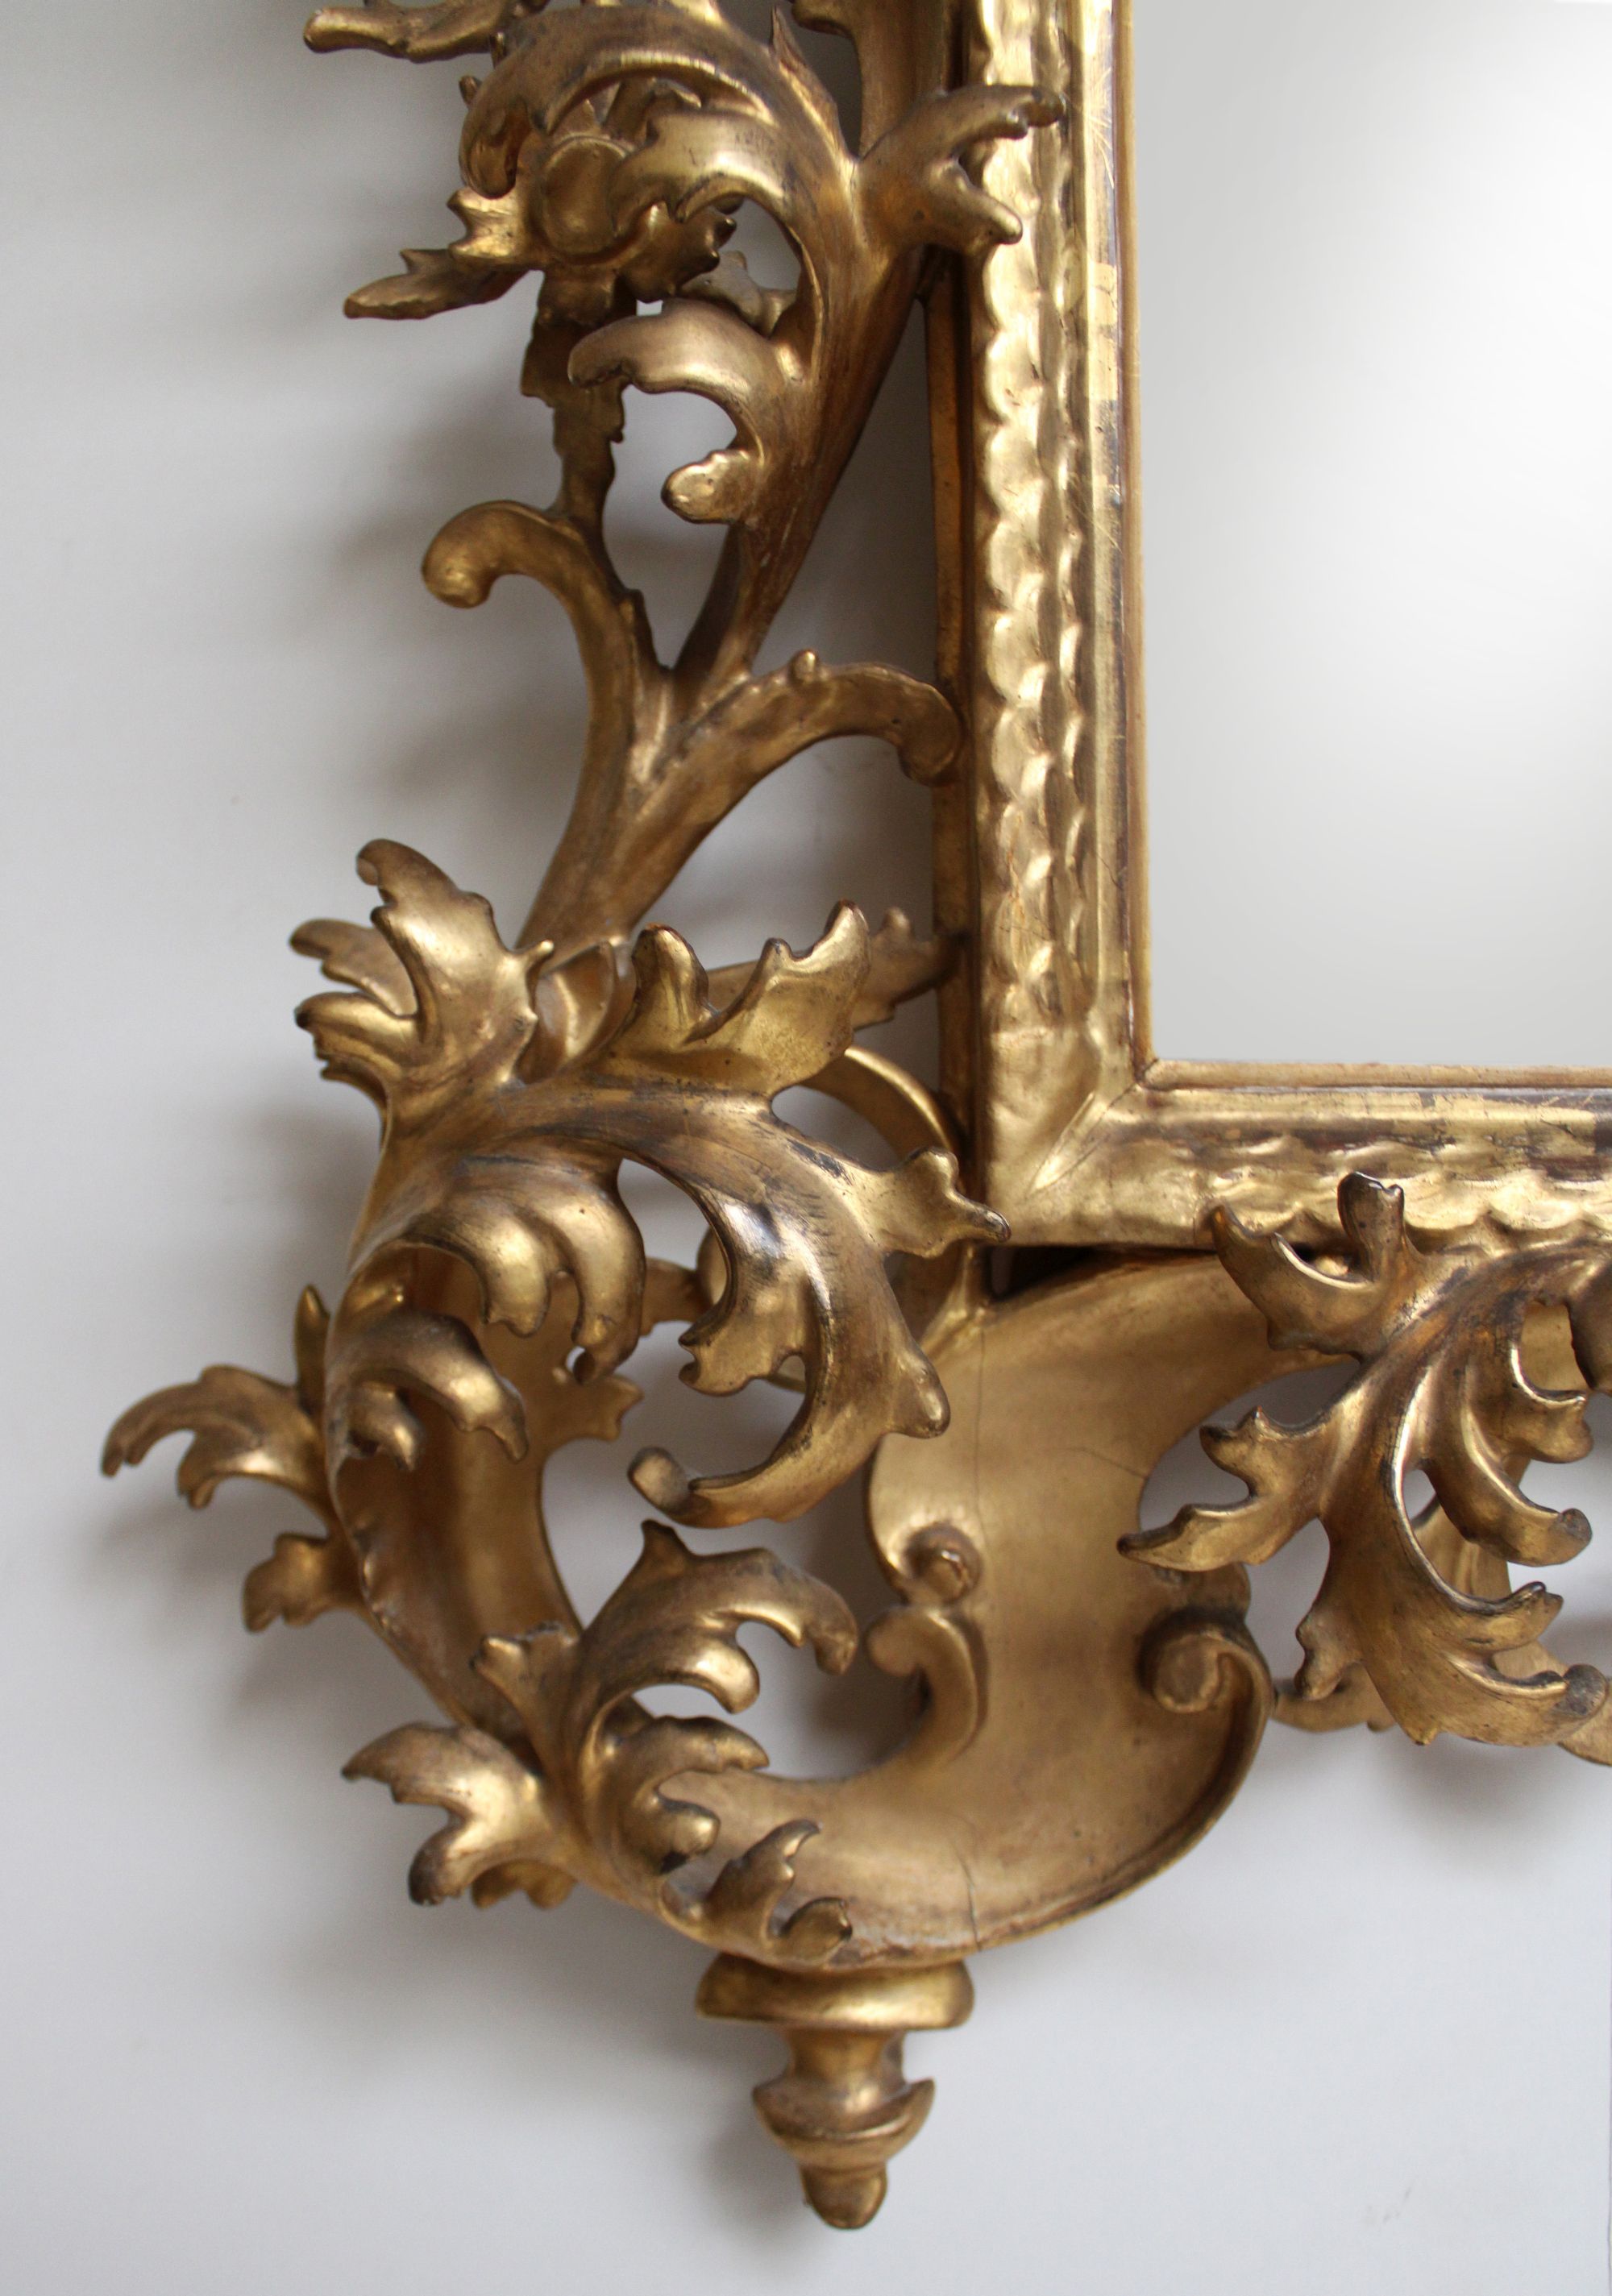 Spiegel, Louis XV, Frankreich, Mitte 18. Jh., originale Fassung und Vergoldung, Spiegelglas später, - Image 2 of 2